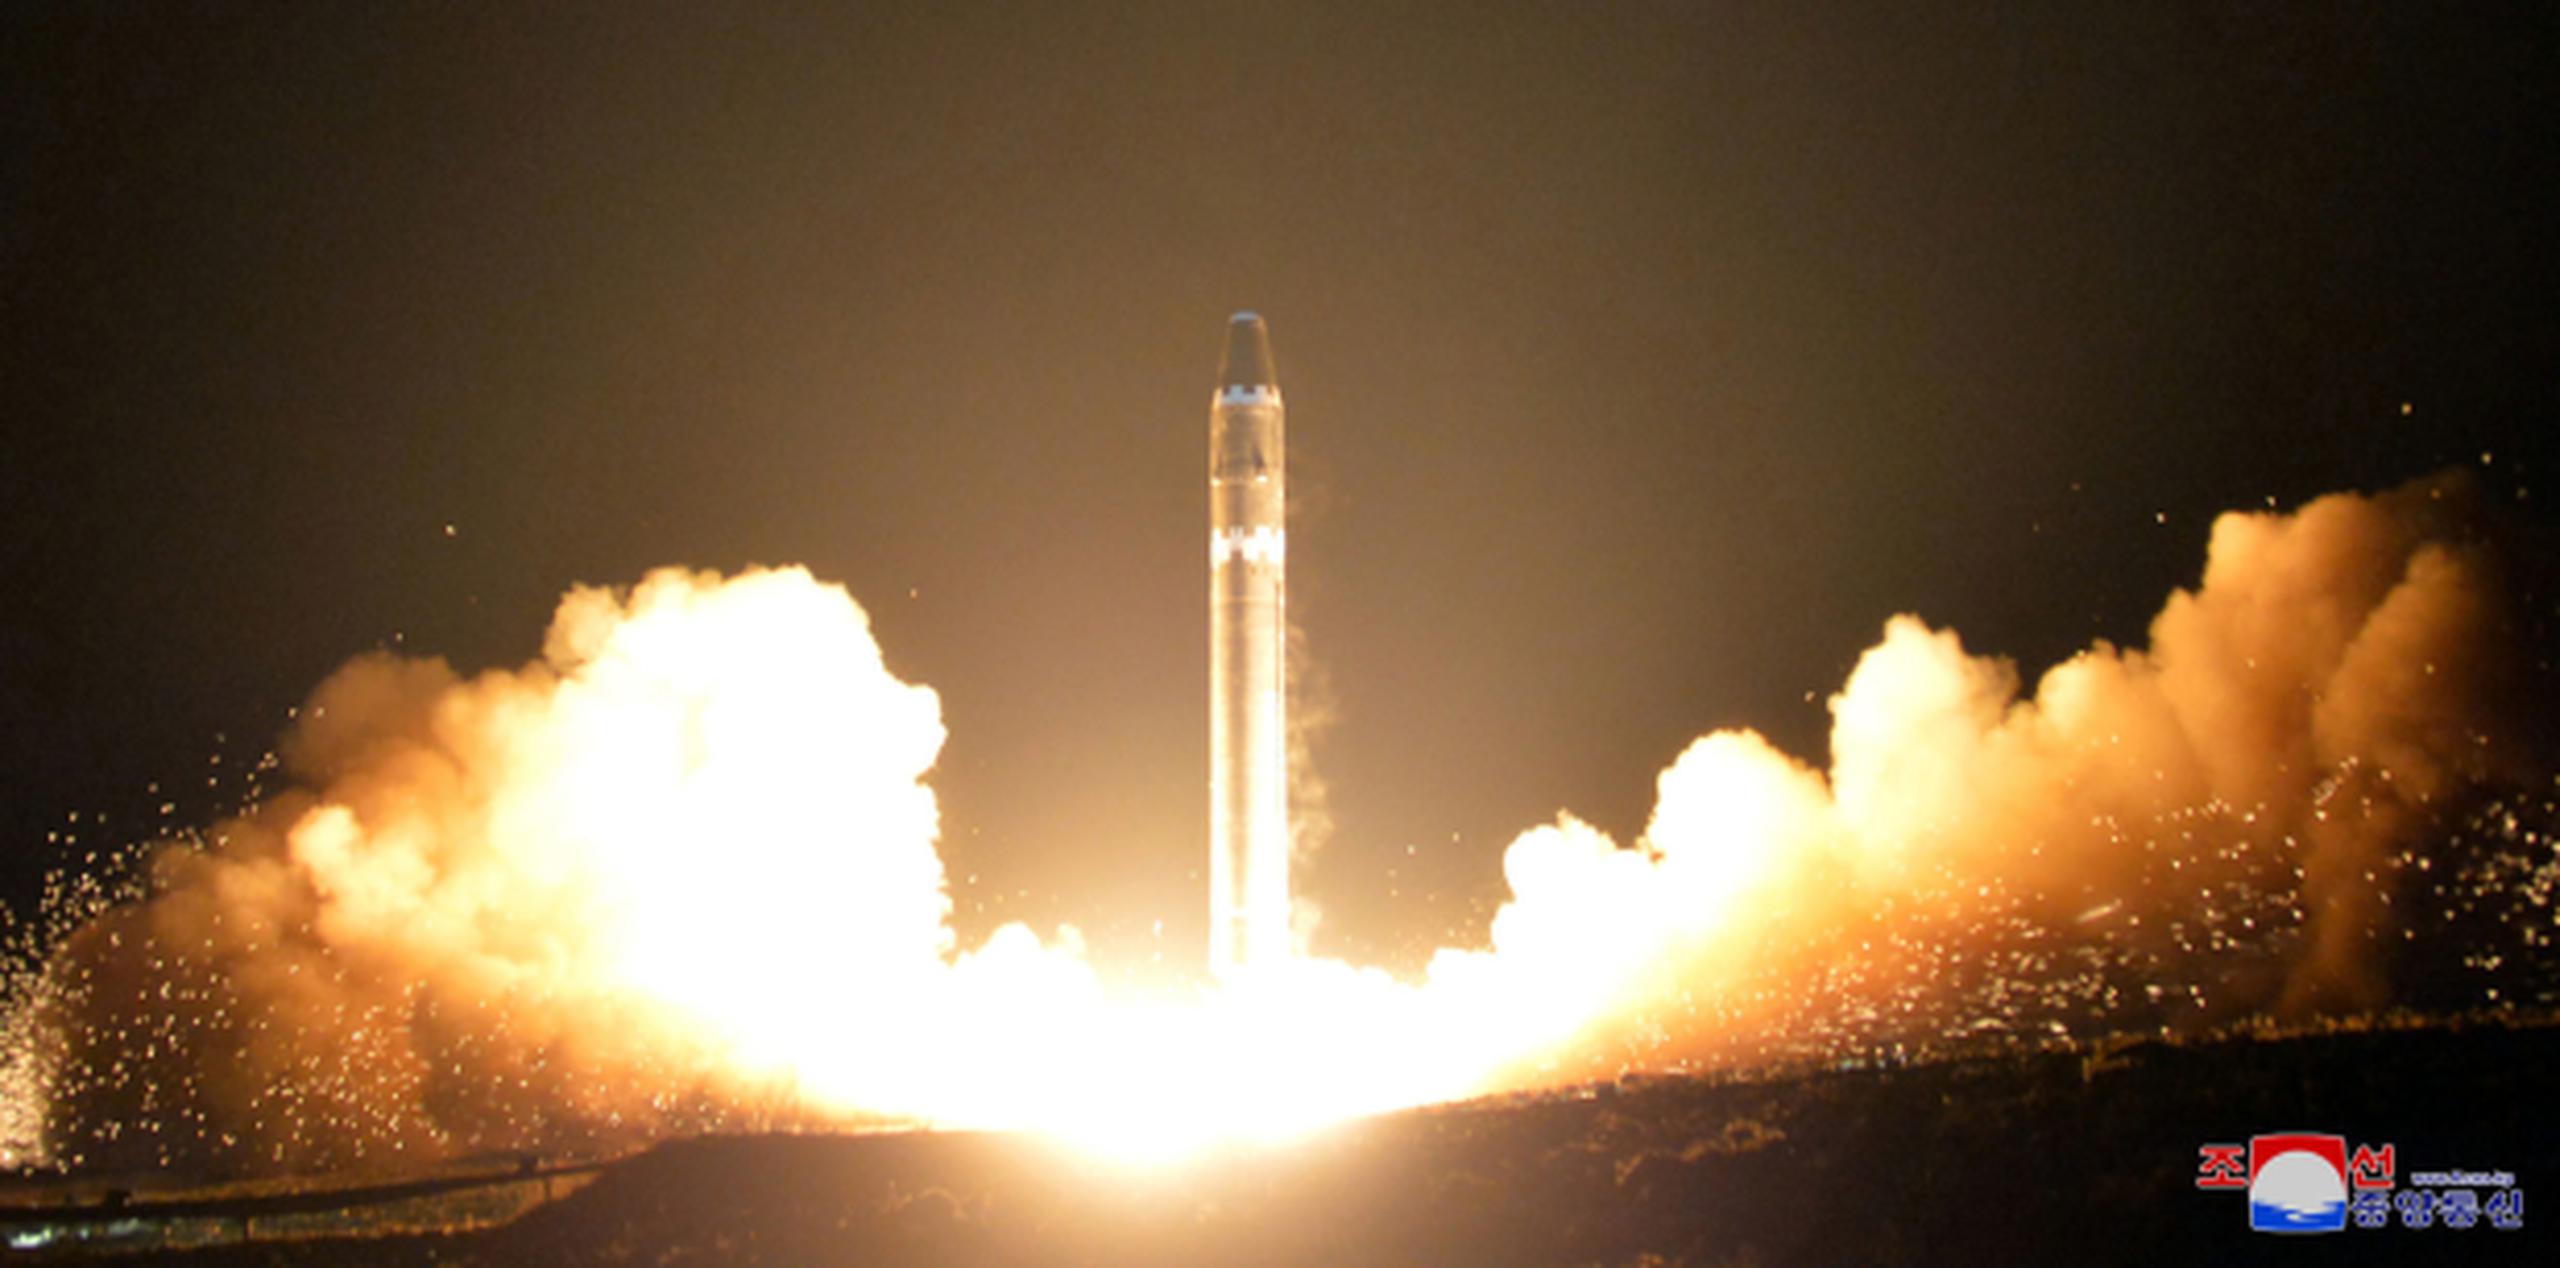 Imagen proporcionada por el gobierno de Corea del Norte el jueves, 30 de noviembre de 2017, que muestra lo que el gobierno norcoreano llama el misil balístico intercontinental Hwasong-15, en una ubicación no divulgada en Corea del Norte. (Korean Central News Agency / Korea News Service vía AP)